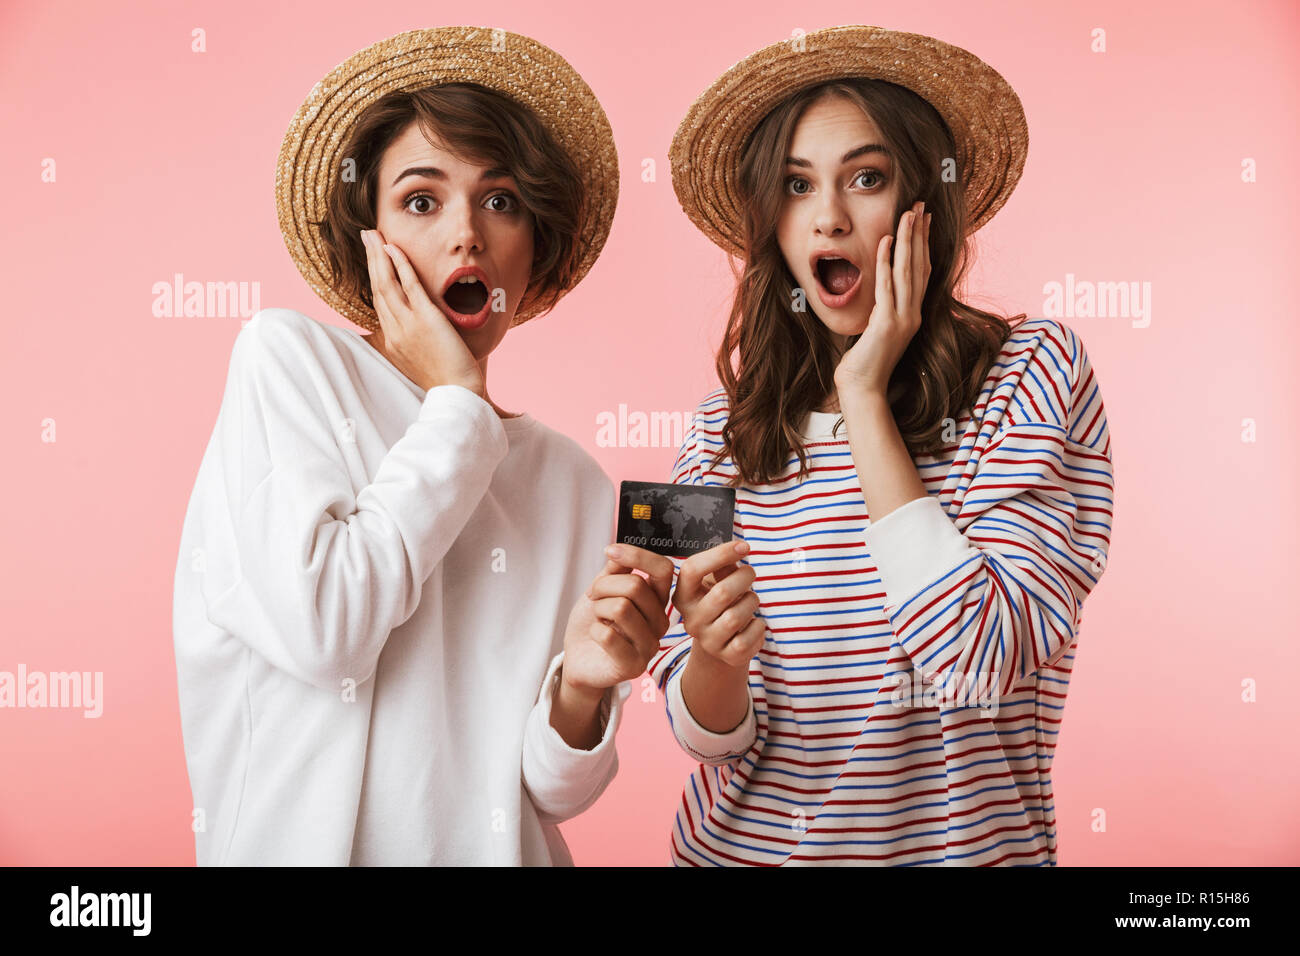 Image de jolies jeunes femmes excitées choqué friends posing isolé sur fond rose holding credit card. Banque D'Images